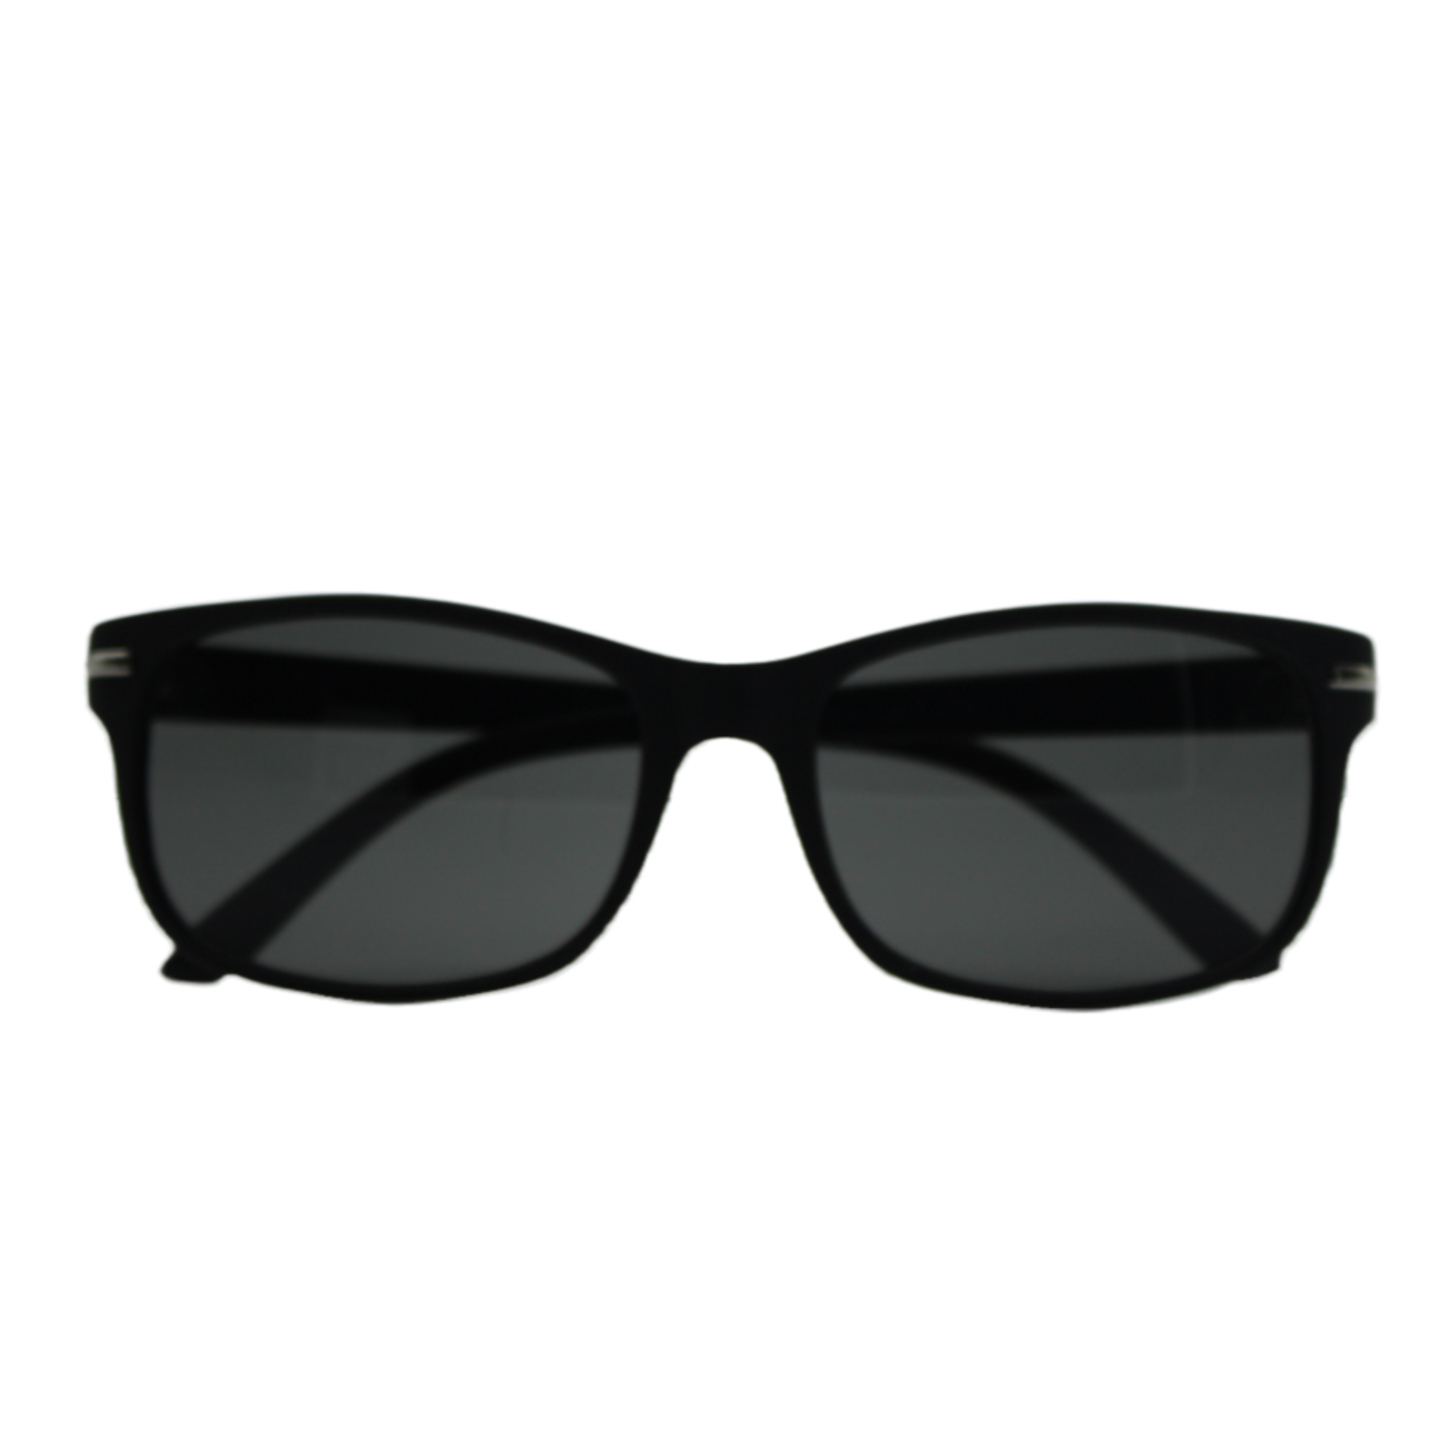 Black Sunglasses for men and women